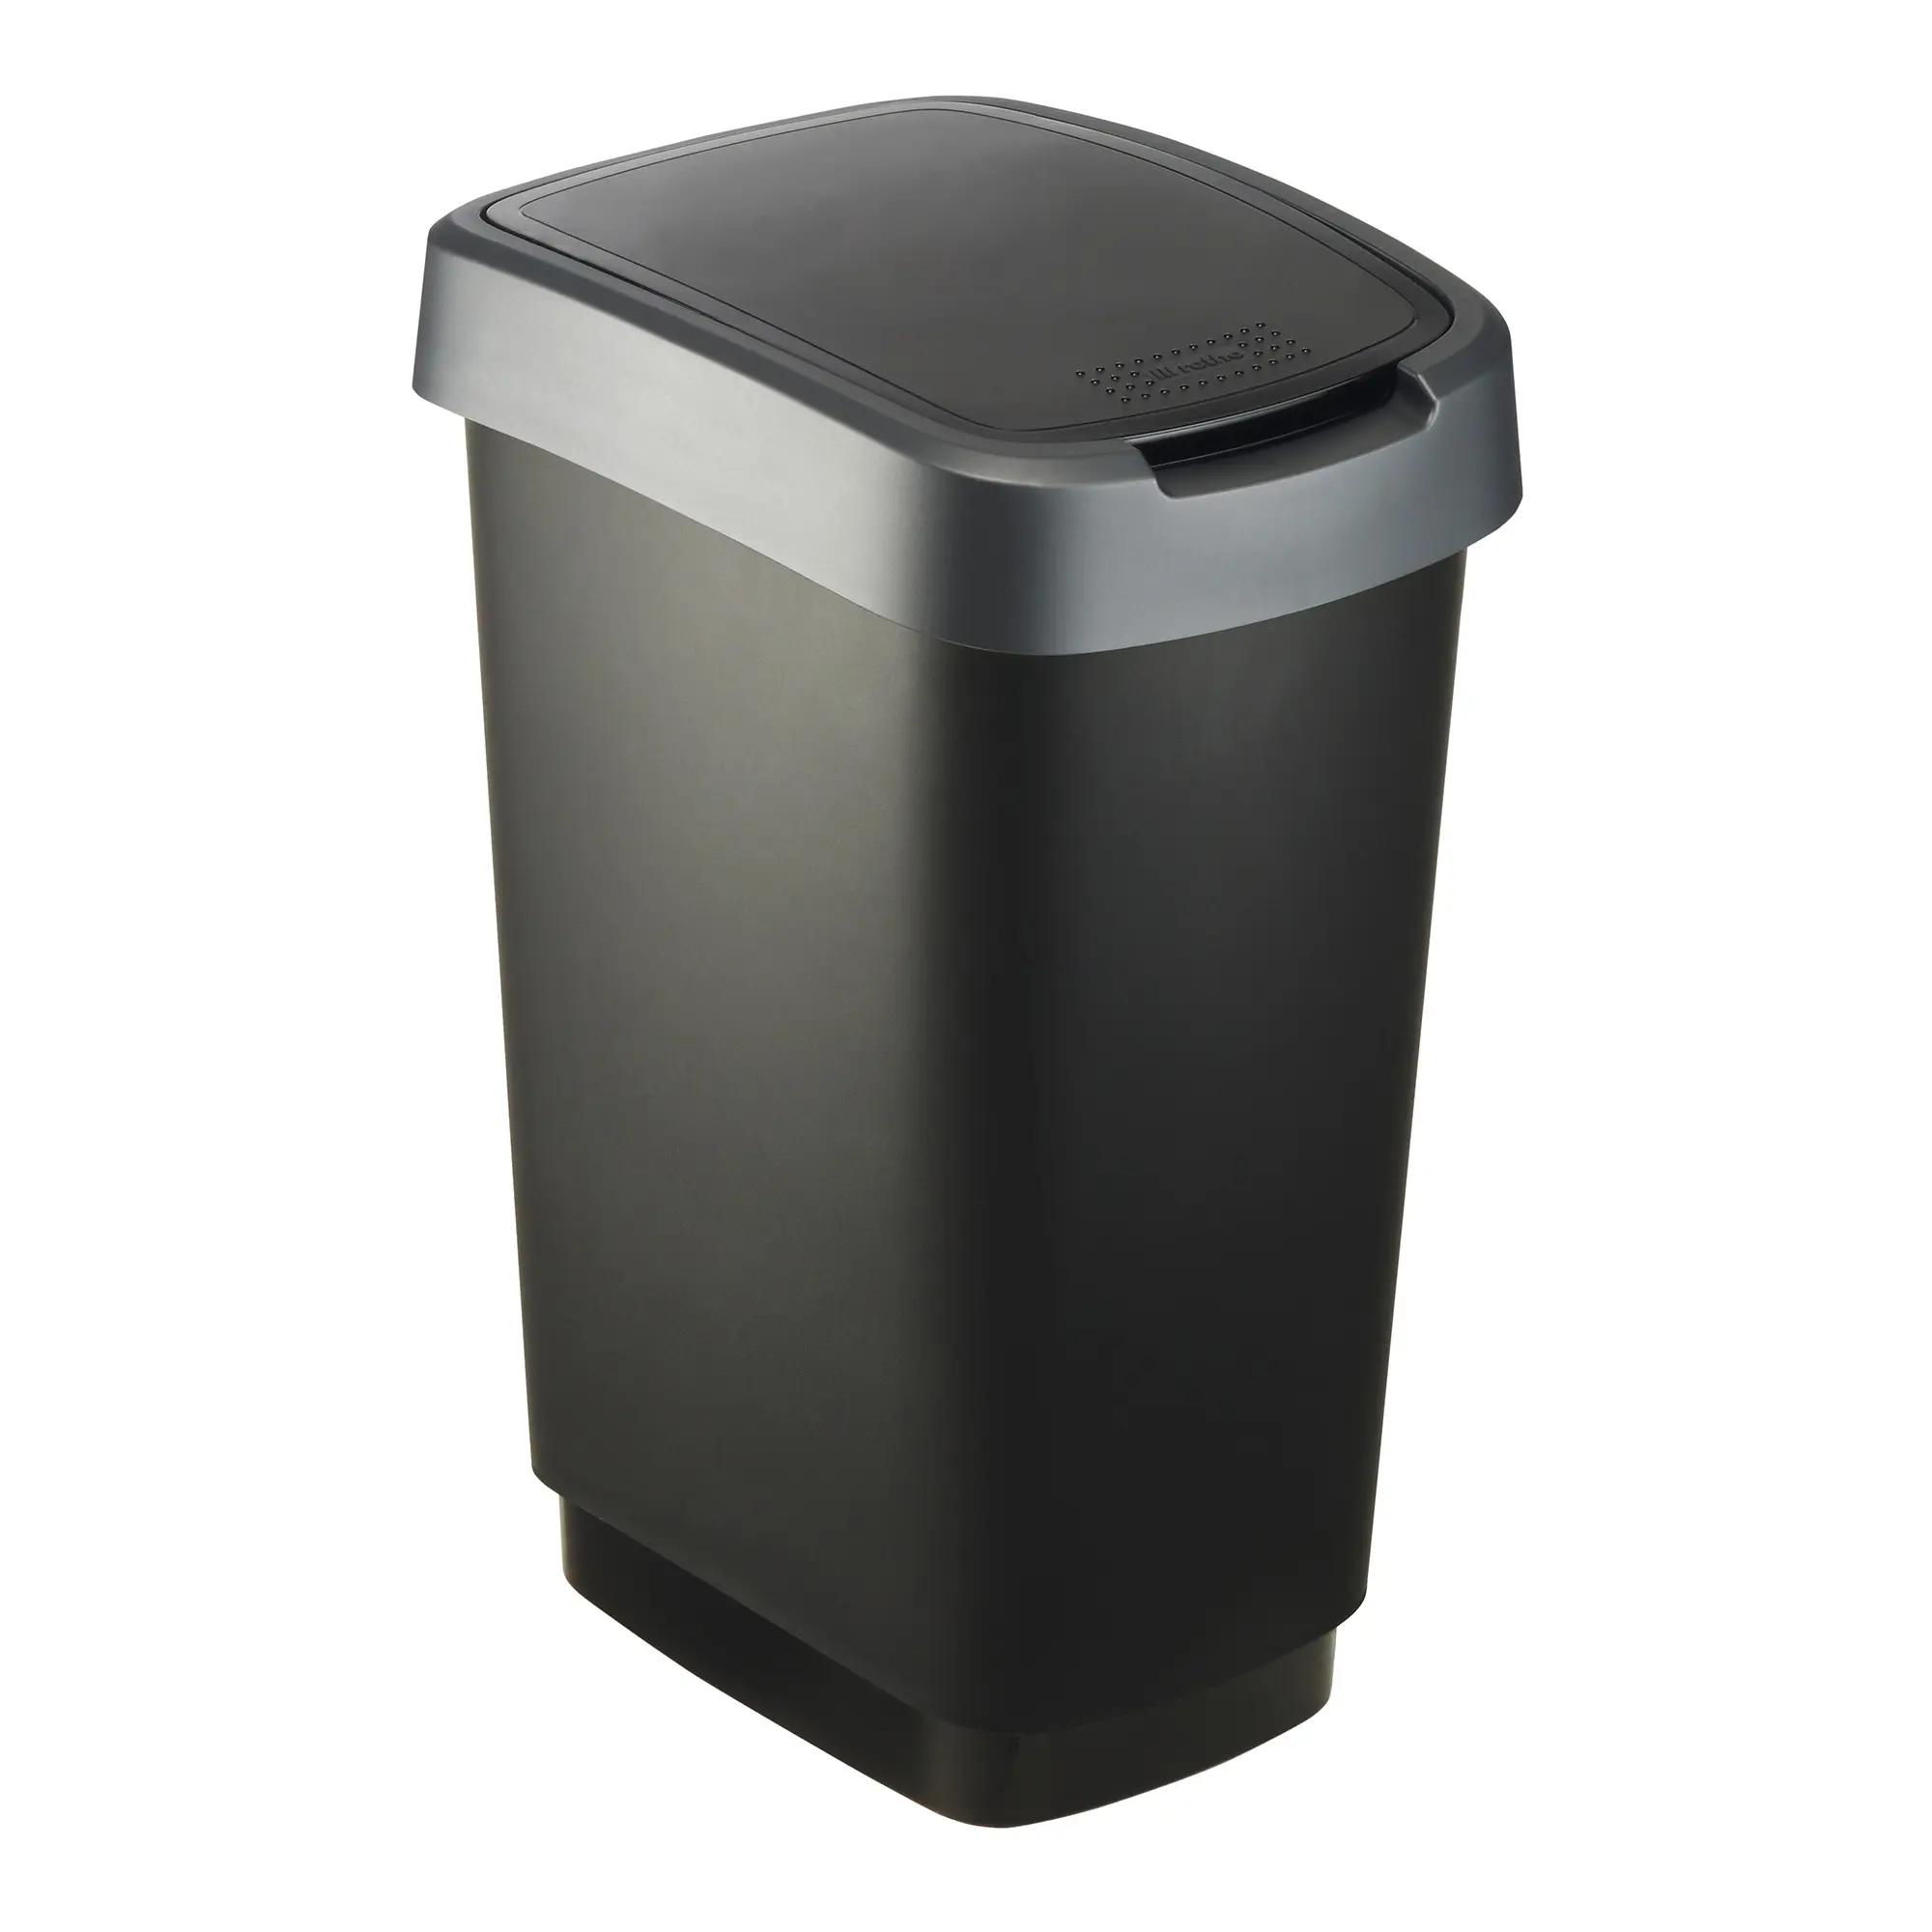 RothoPro Twist Abfallbehälter 25 Liter schwarz/silber 59135391_1